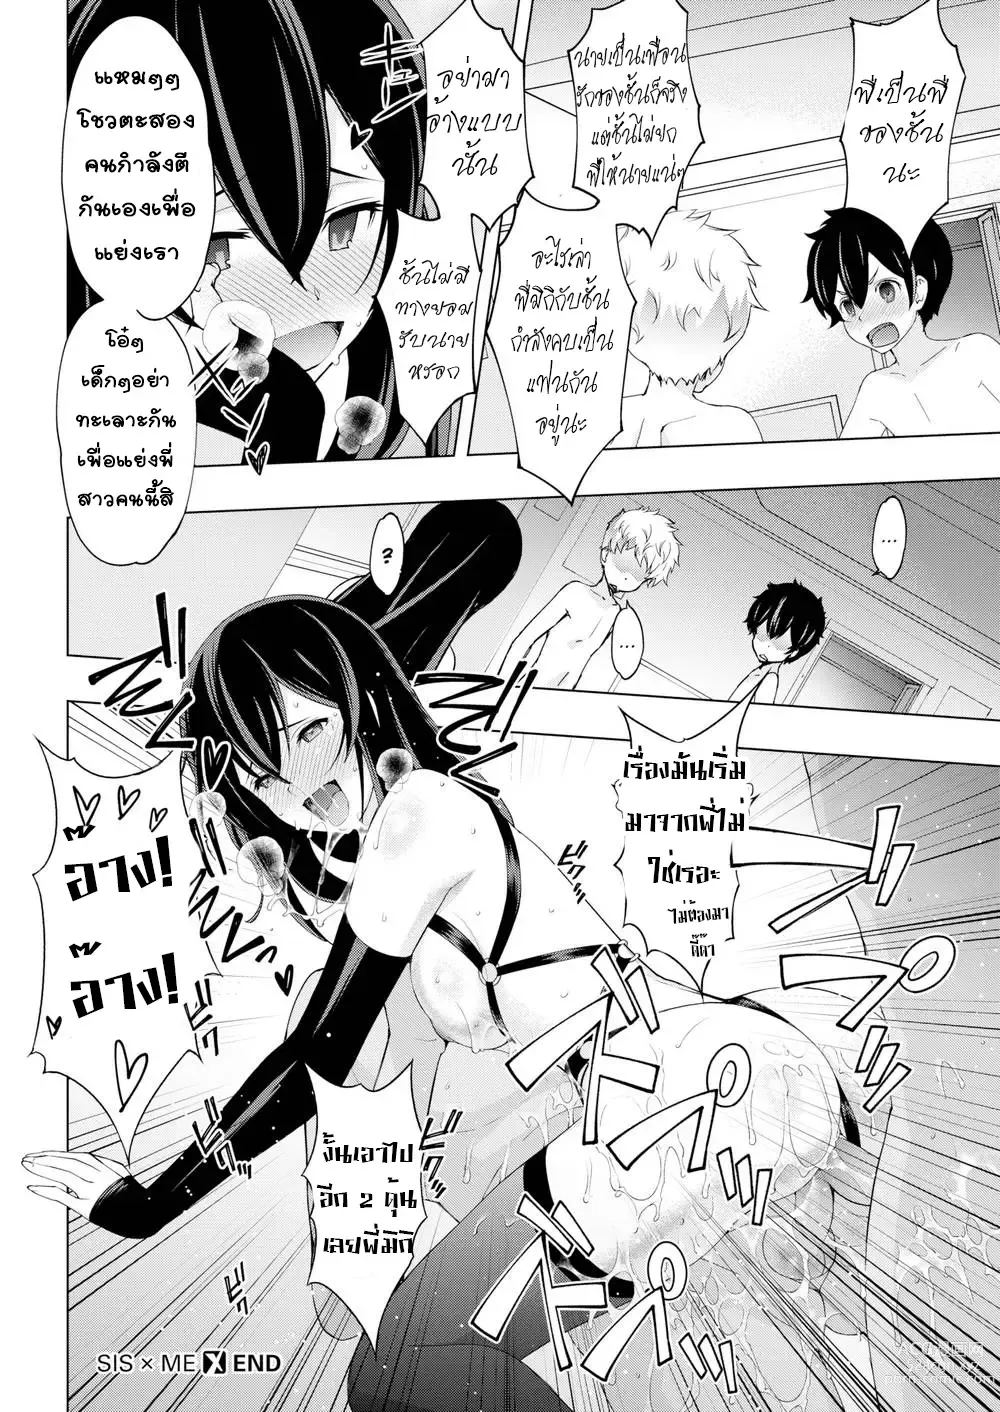 Page 22 of manga Sis x Me